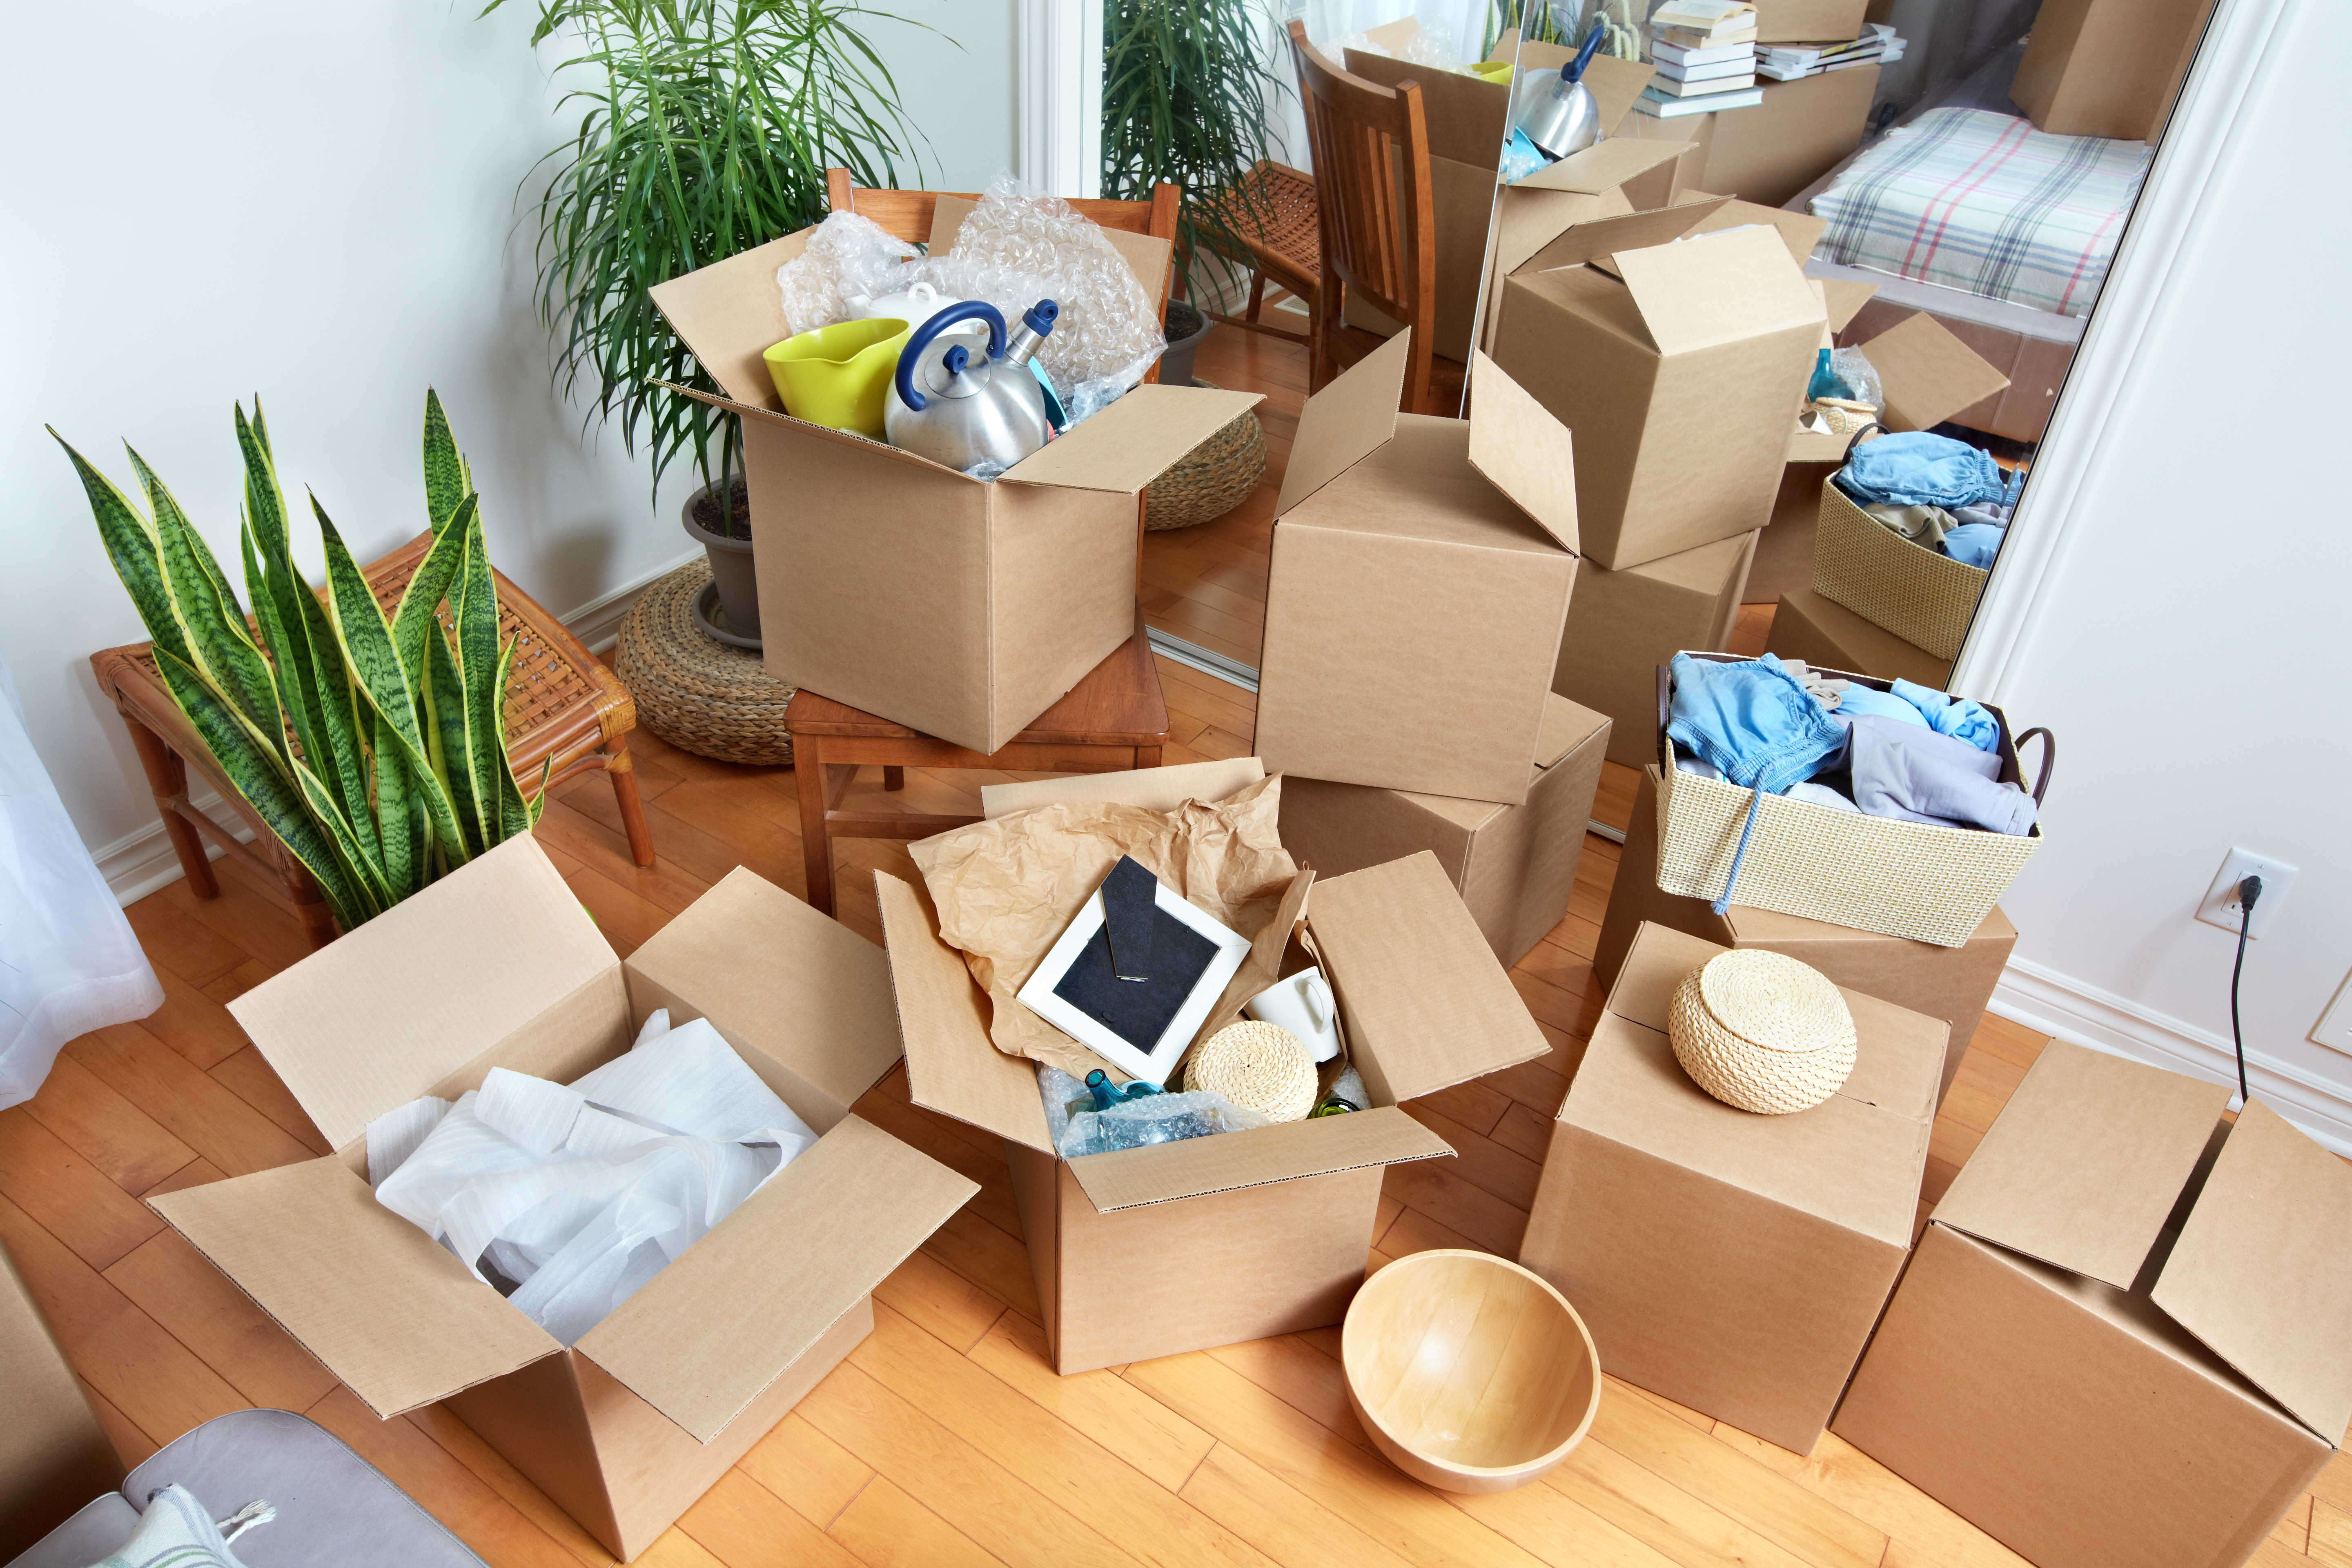 Trasloco organizzato: come riempire gli scatoloni in modo intelligente